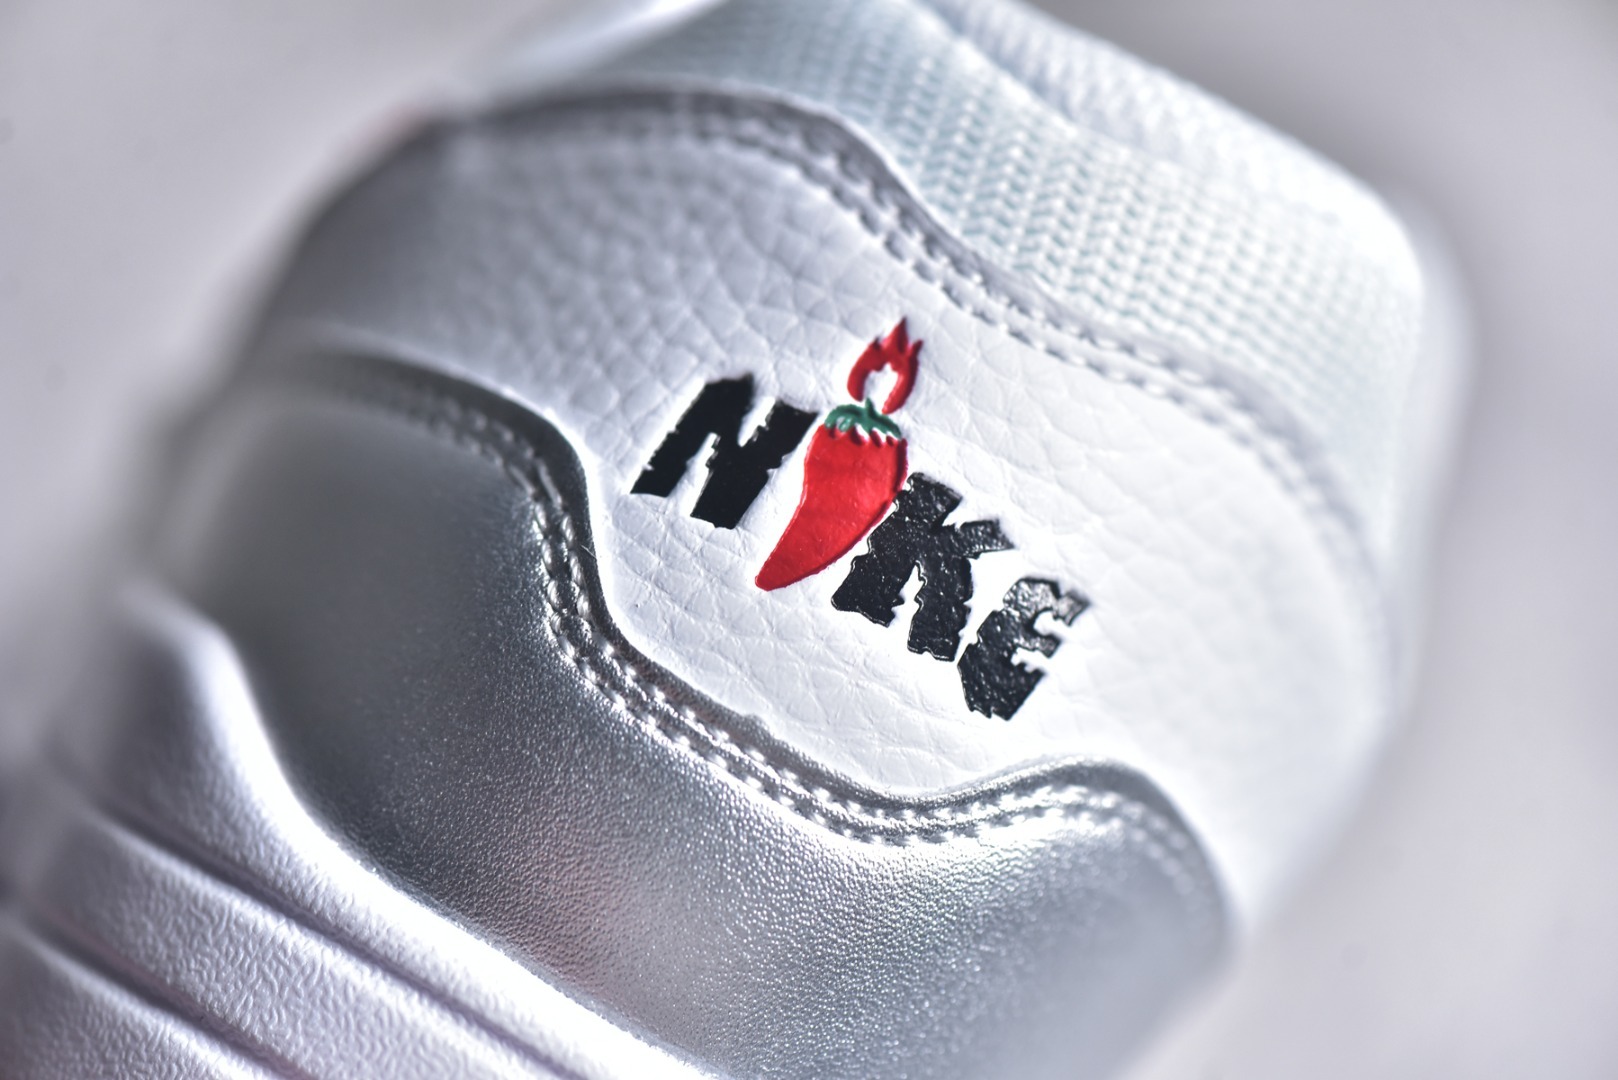 $65 Buy online Nike Air Max 1 replica sneakers HF7746-100.  $65 Buy online Nike Air Max 1 replica sneakers HF7746-100.  30,Sports footwear,replica,Nike Air Max 1 Prm